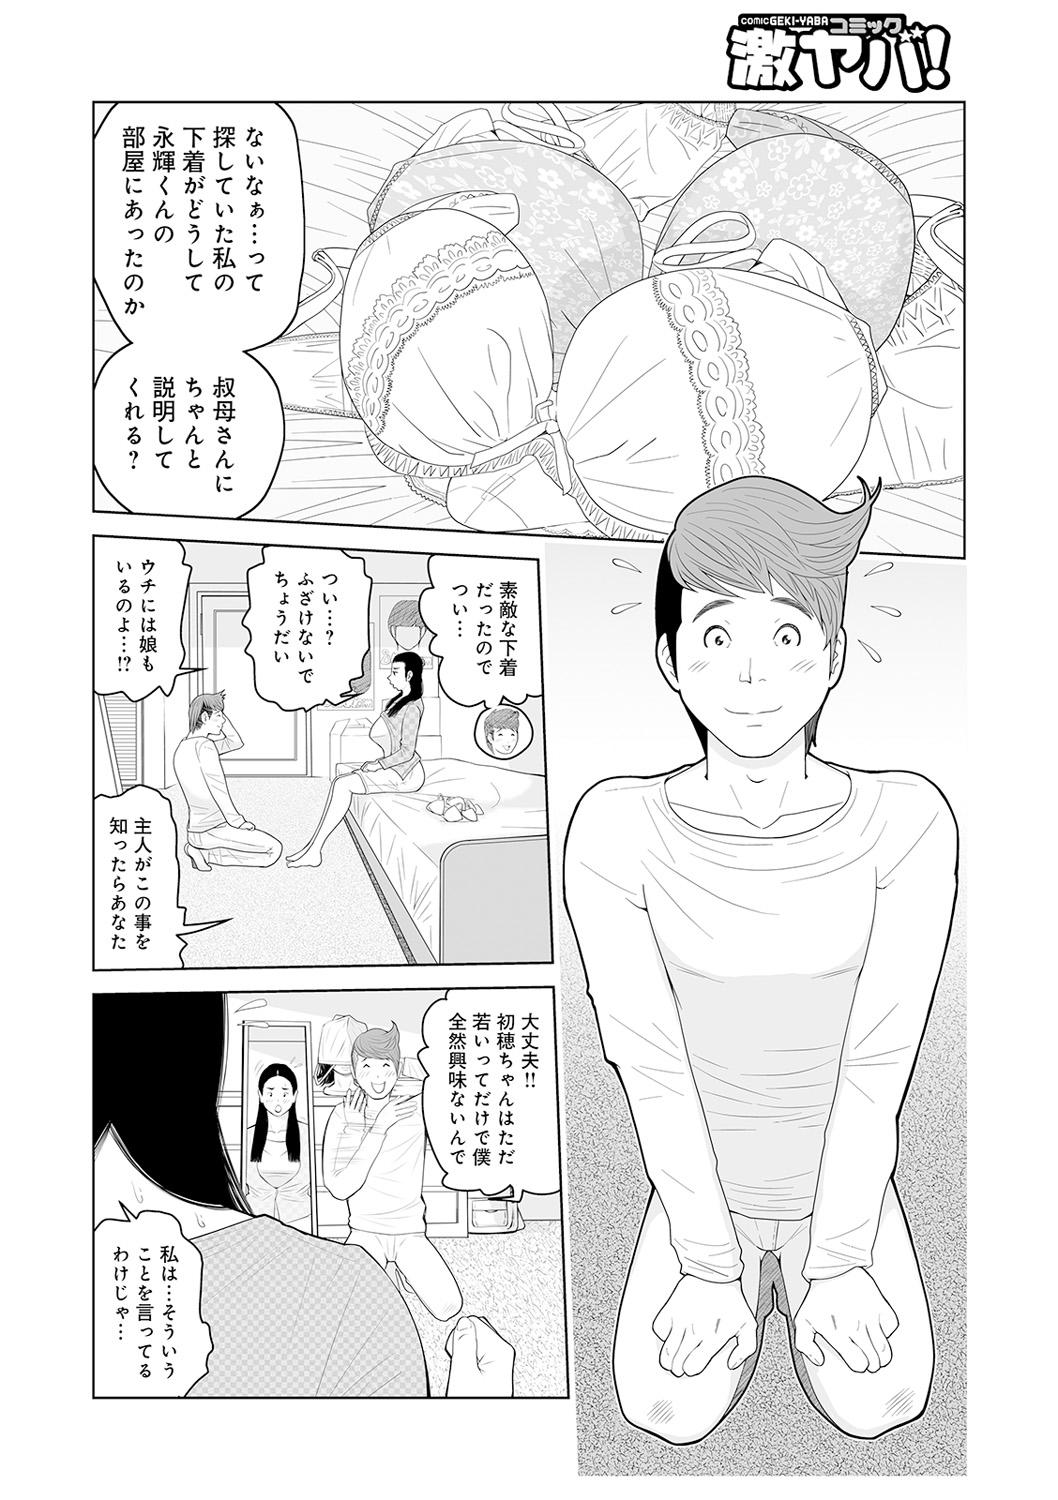 Oba-san Dashite mo ii? Vol. 02 3